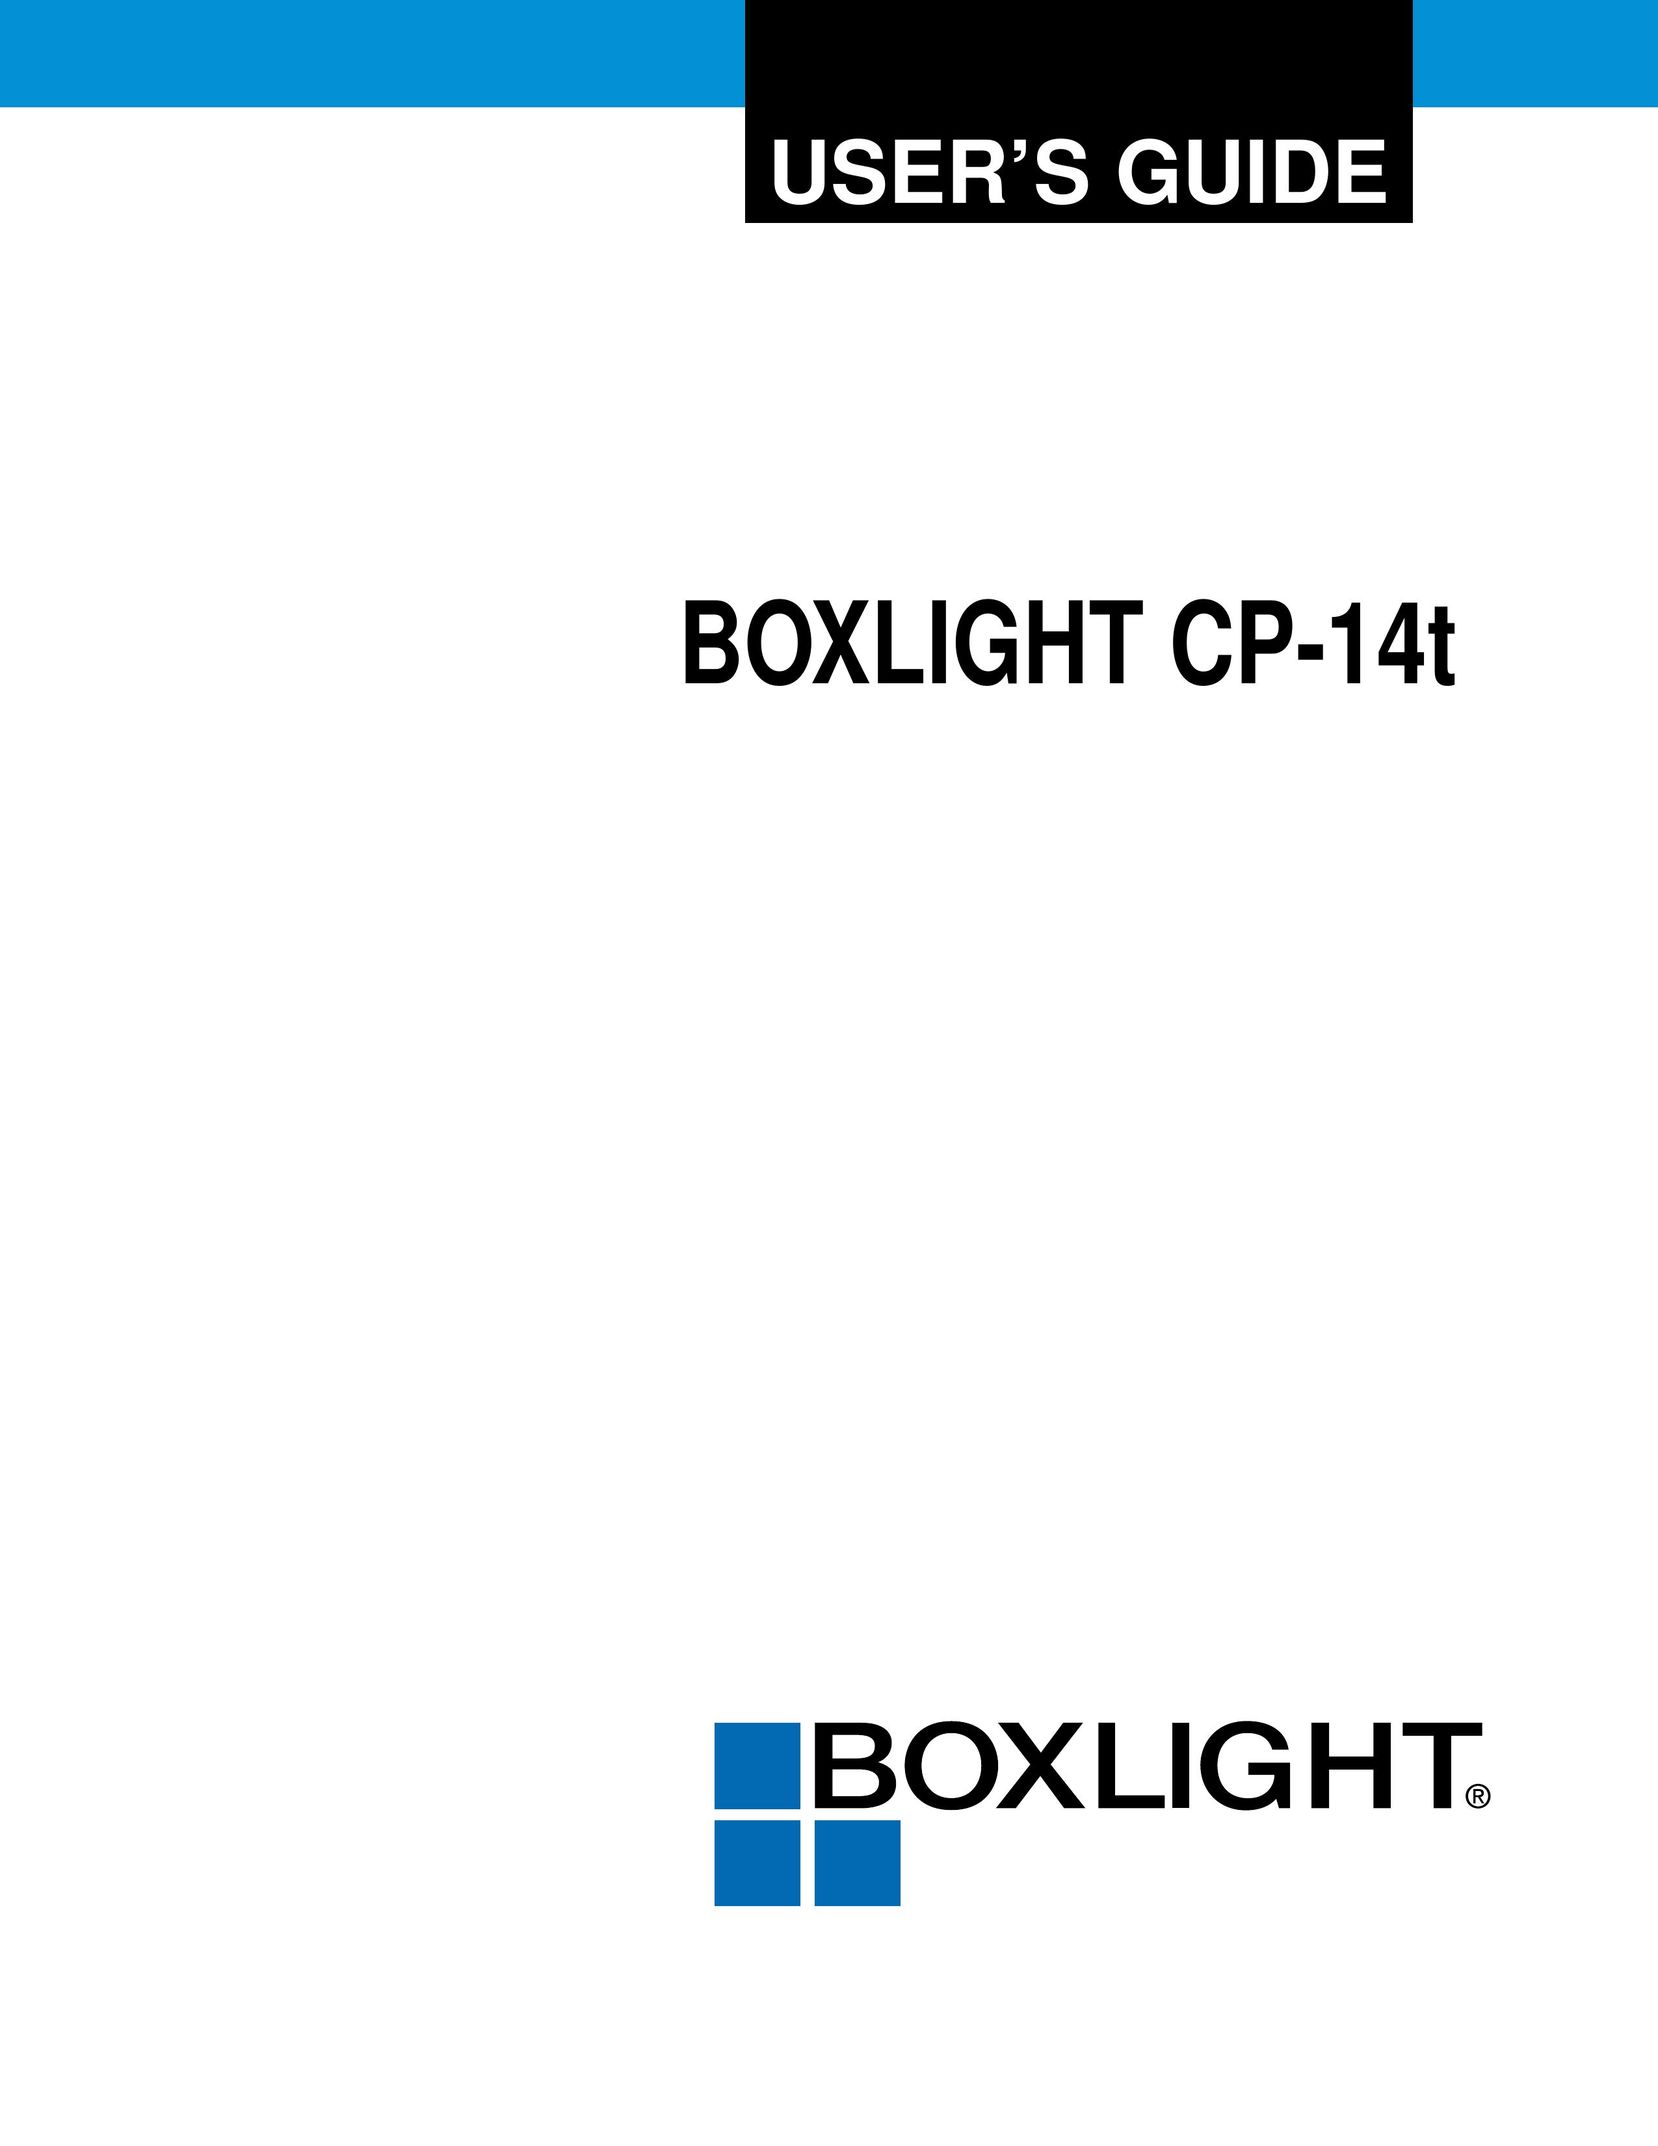 BOXLIGHT CP-14t Projector User Manual